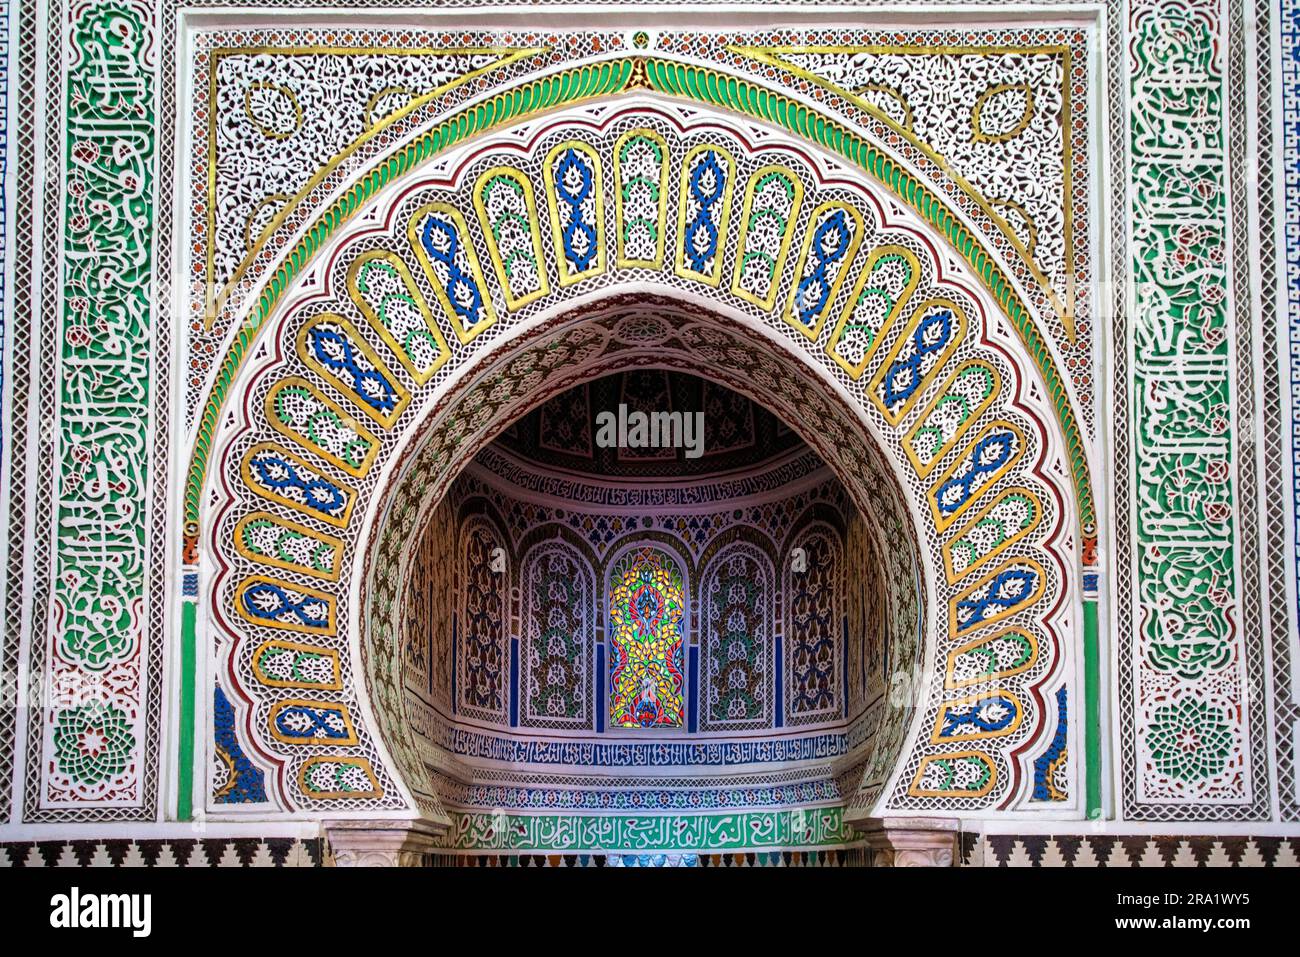 Altare decorato in stile moresco in una moschea di Fez, Marocco Foto Stock